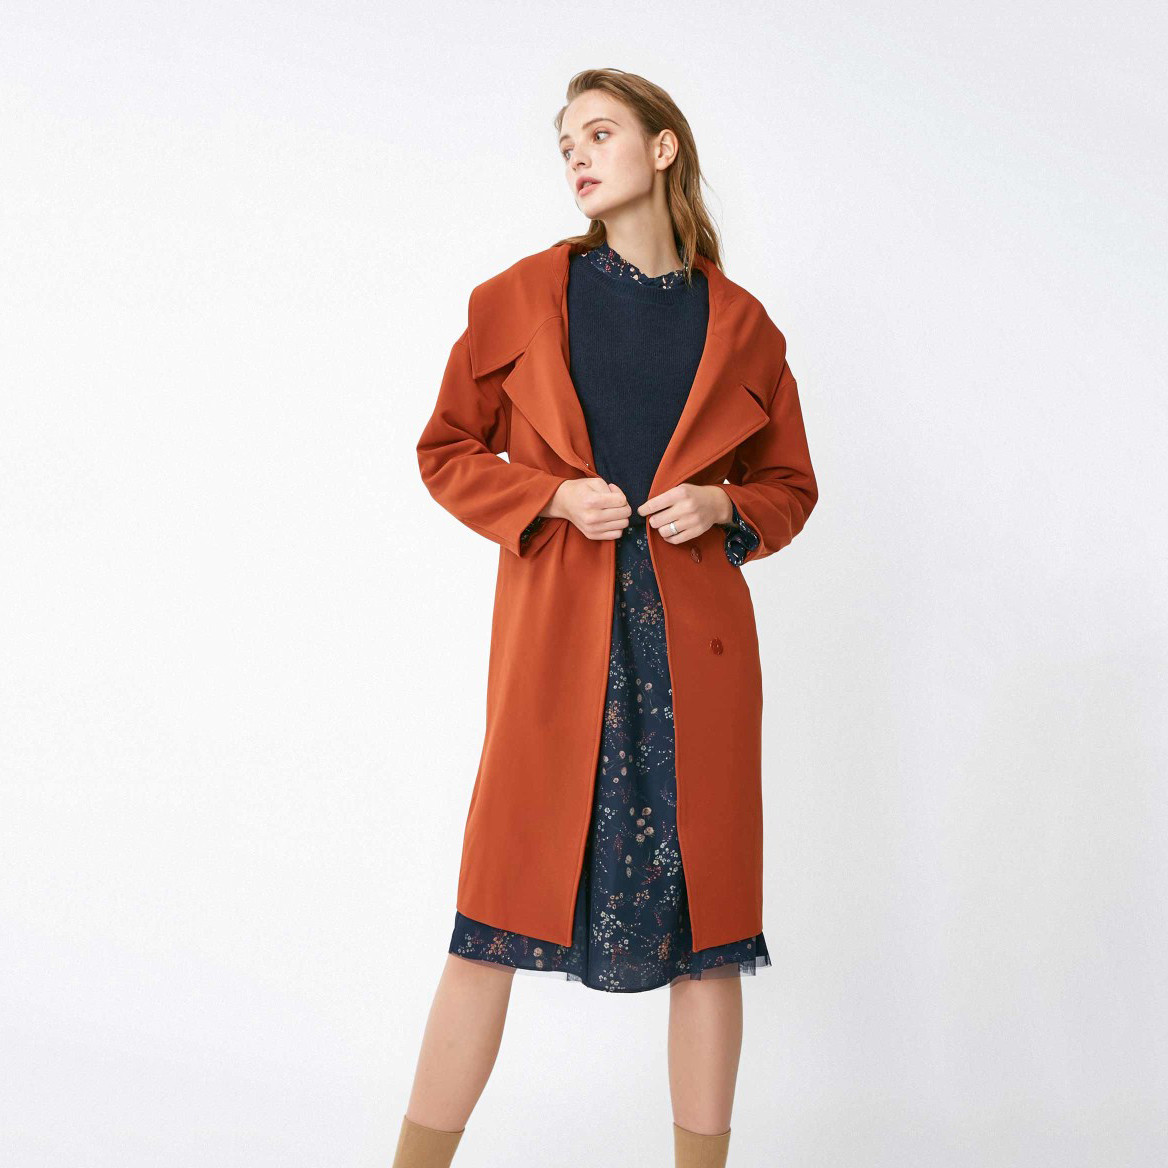 Dongfan-Best Products Top-selling Winter 2017 Longline Wool Coat-4